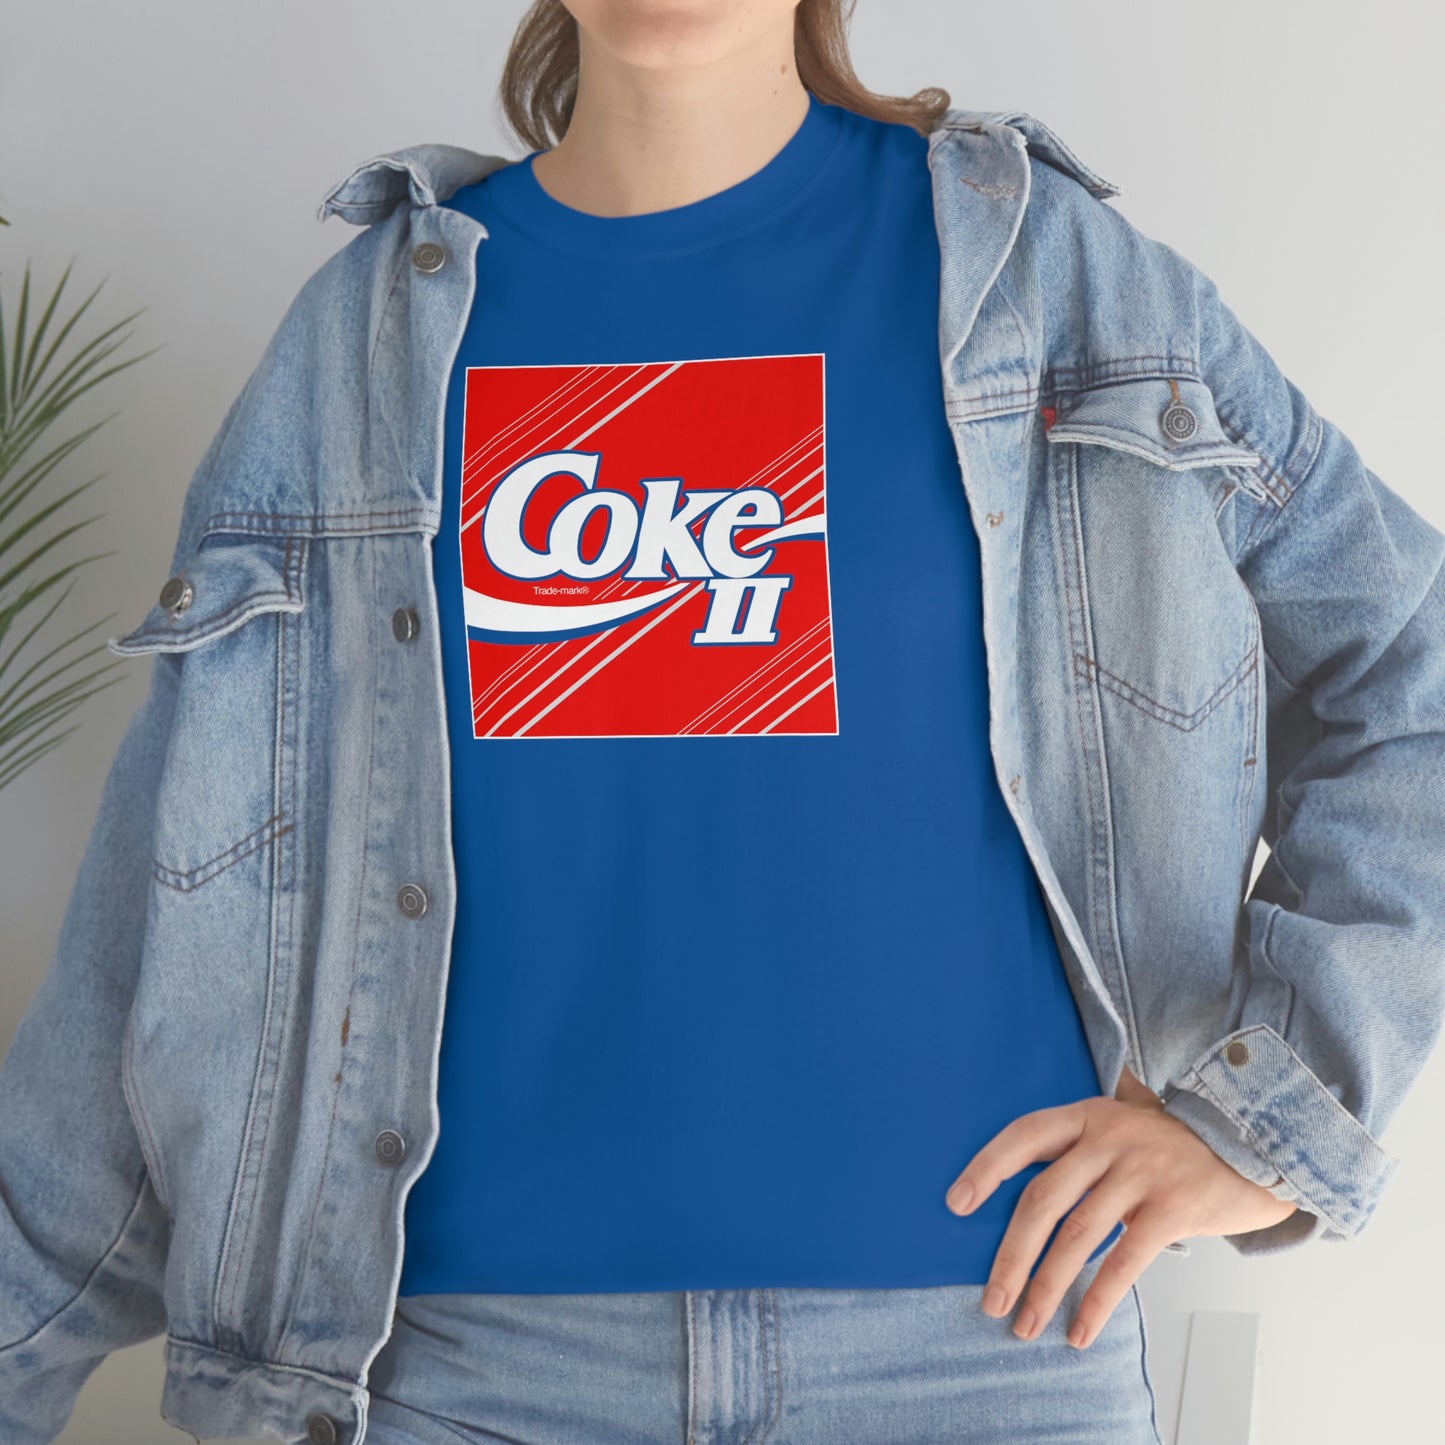 Coke II T-shirt